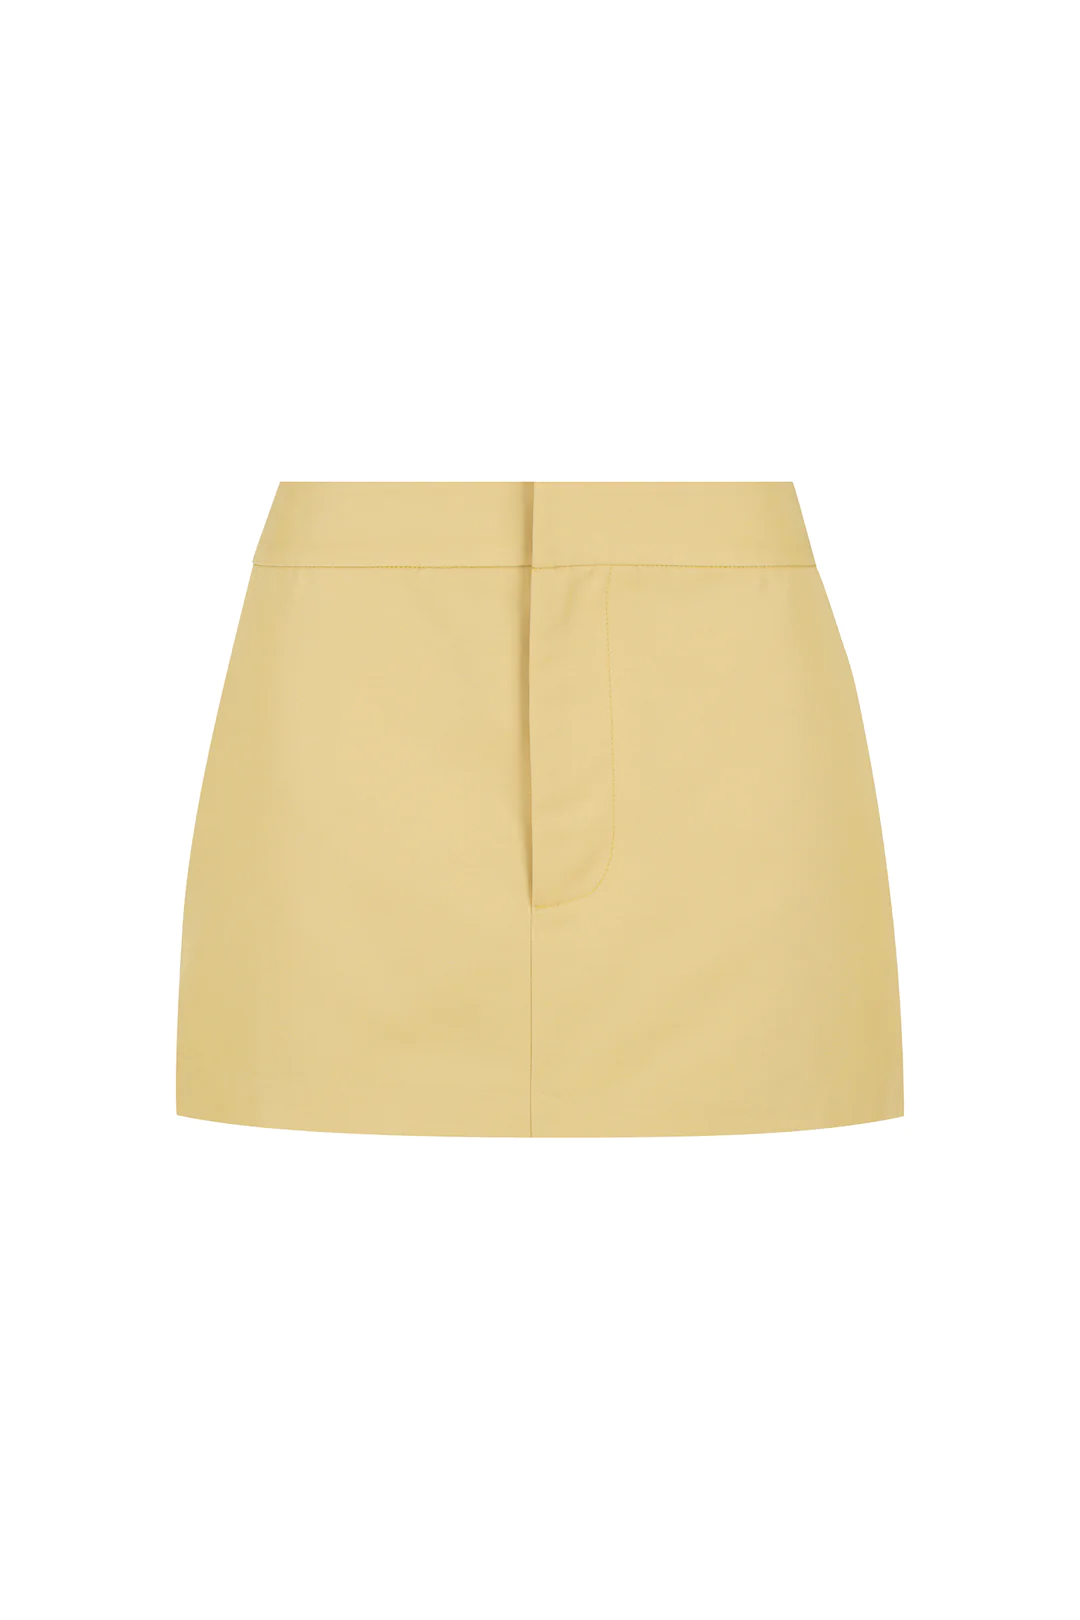 Forrester Suit Skirt // Blonde